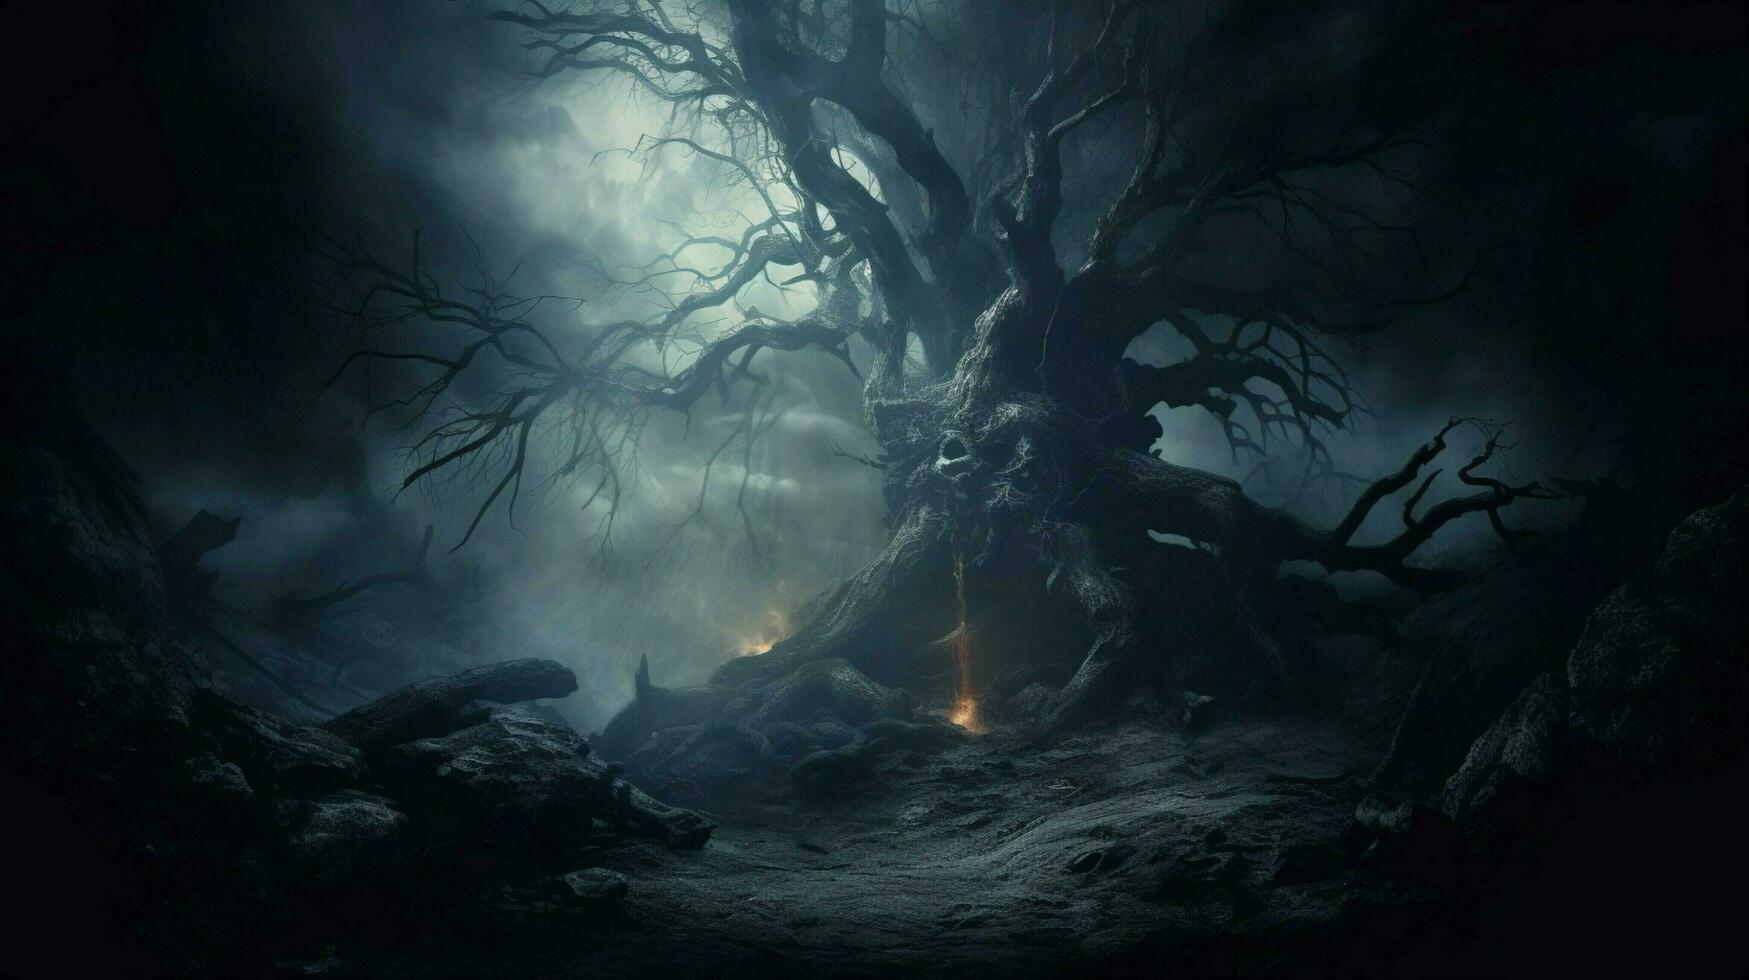 spooky night dark horror foggy old tree evil fear fantasy photo